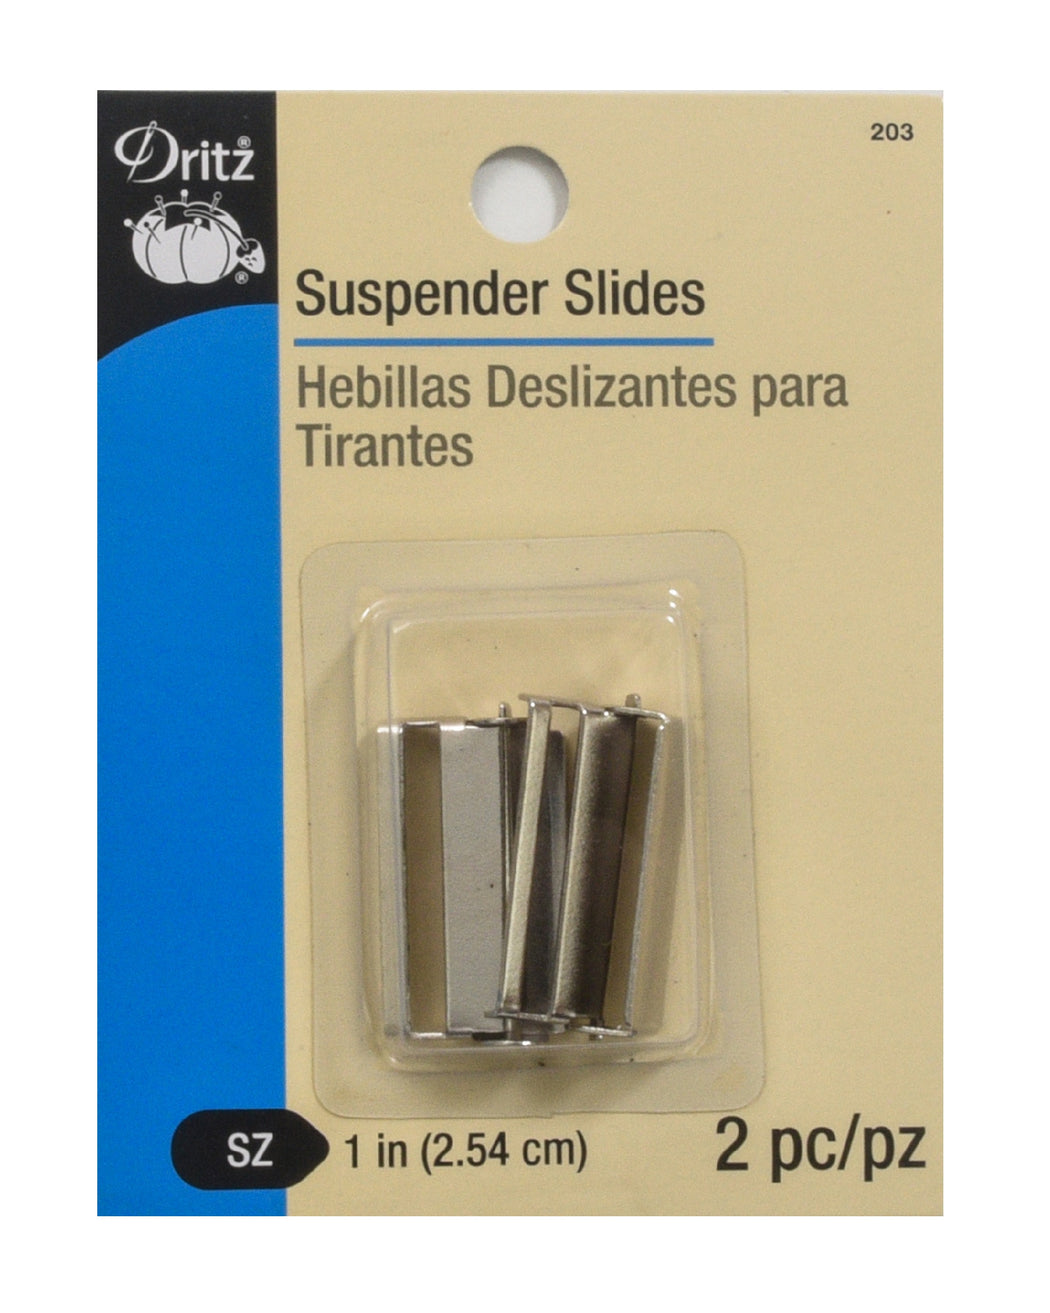 1" Suspender Slides - Zipper and Thread